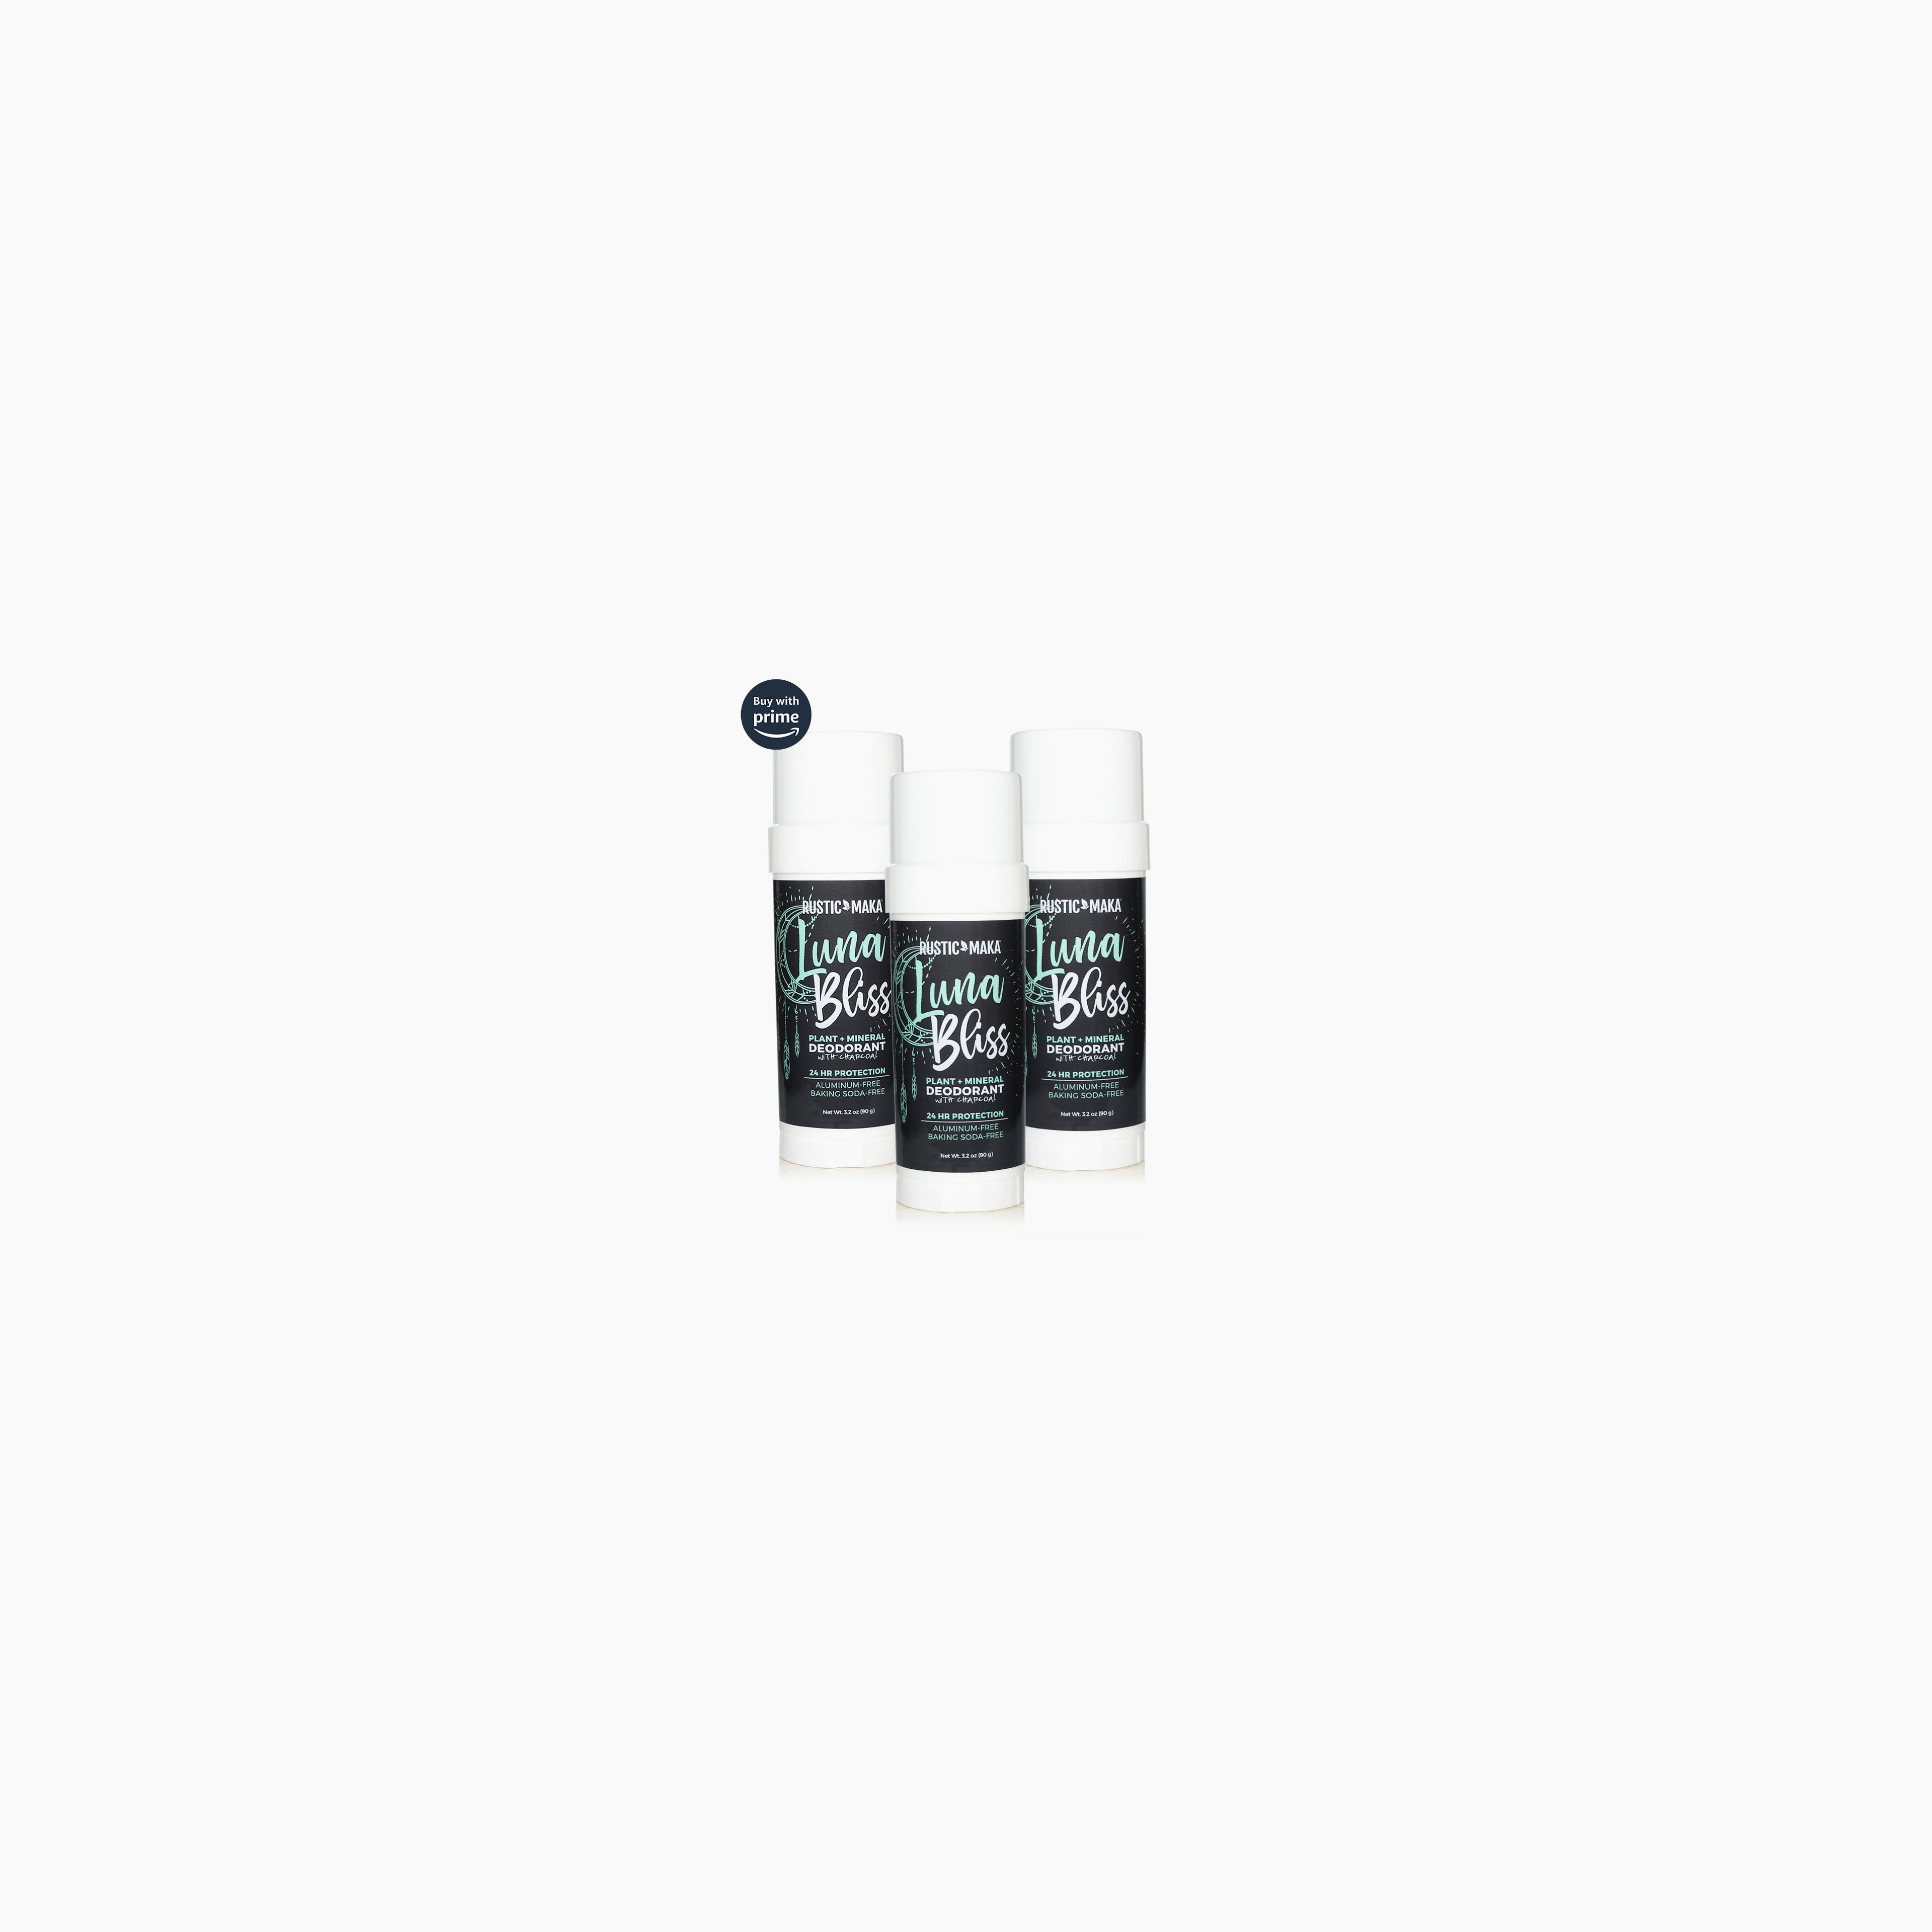 LUNA BLISS Natural Deodorant 3-Pack